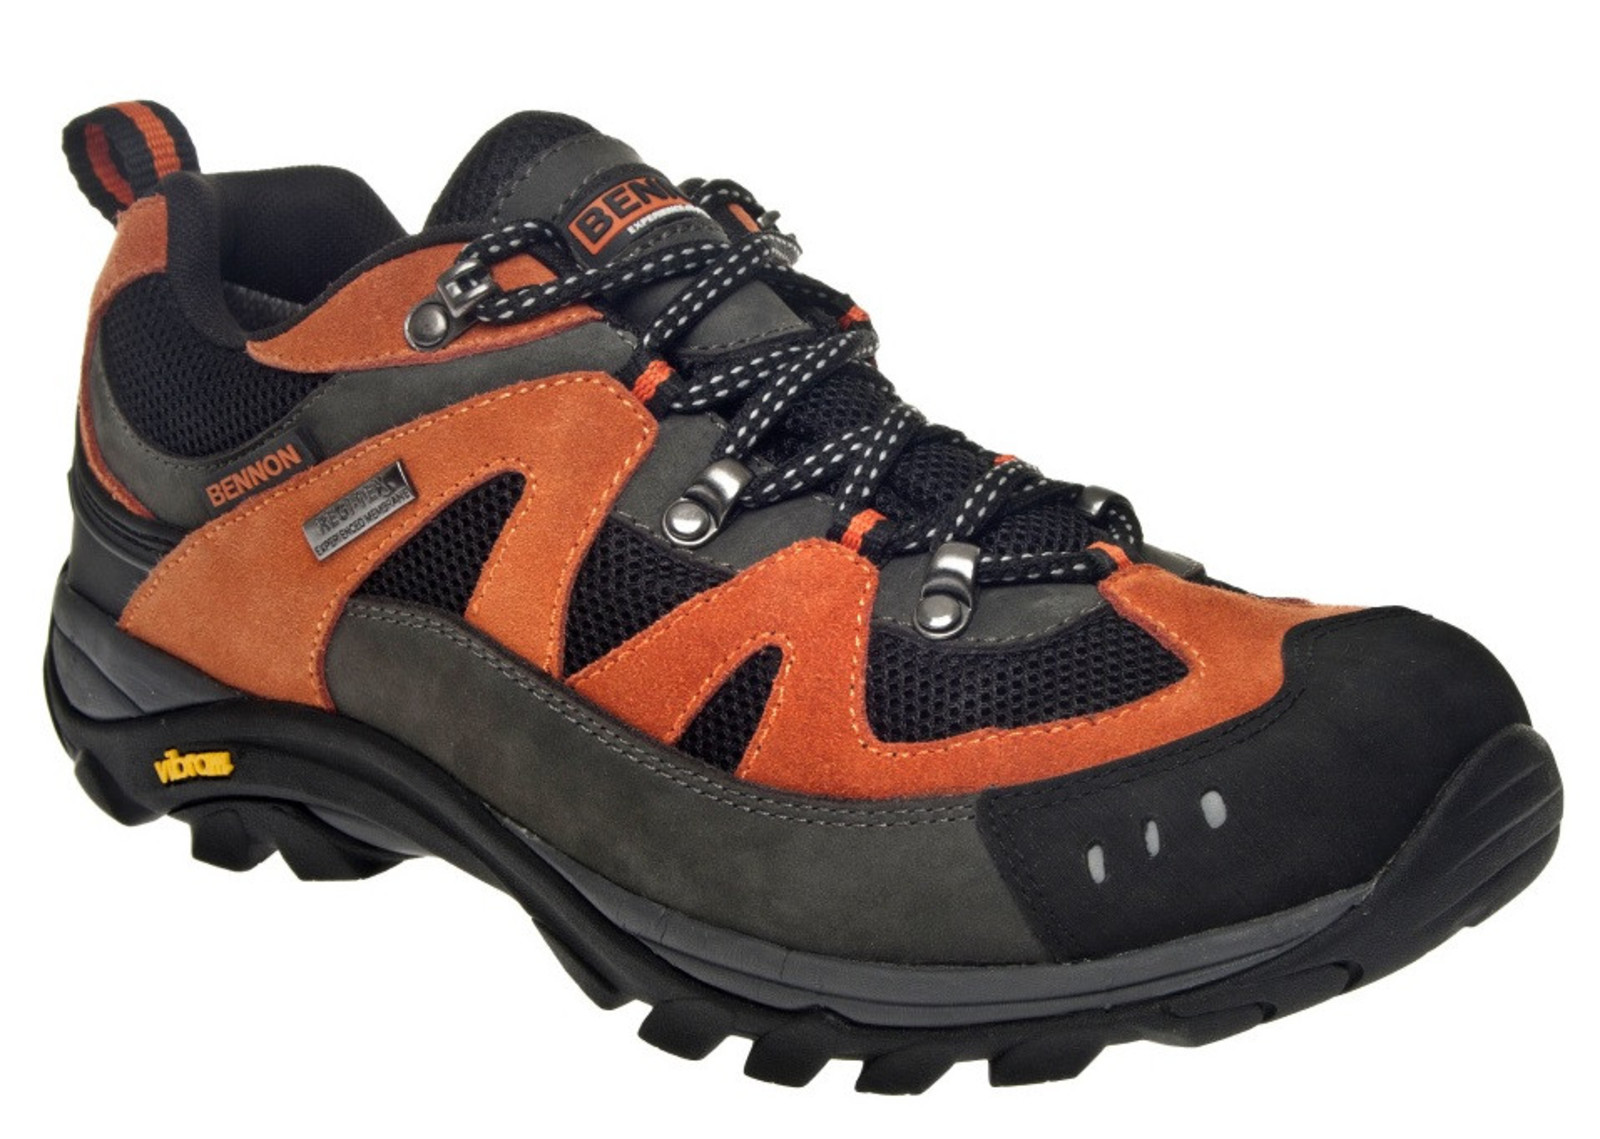 Outdoorové topánky Bennon Emperado s membránou - veľkosť: 38, farba: sivá/oranžová